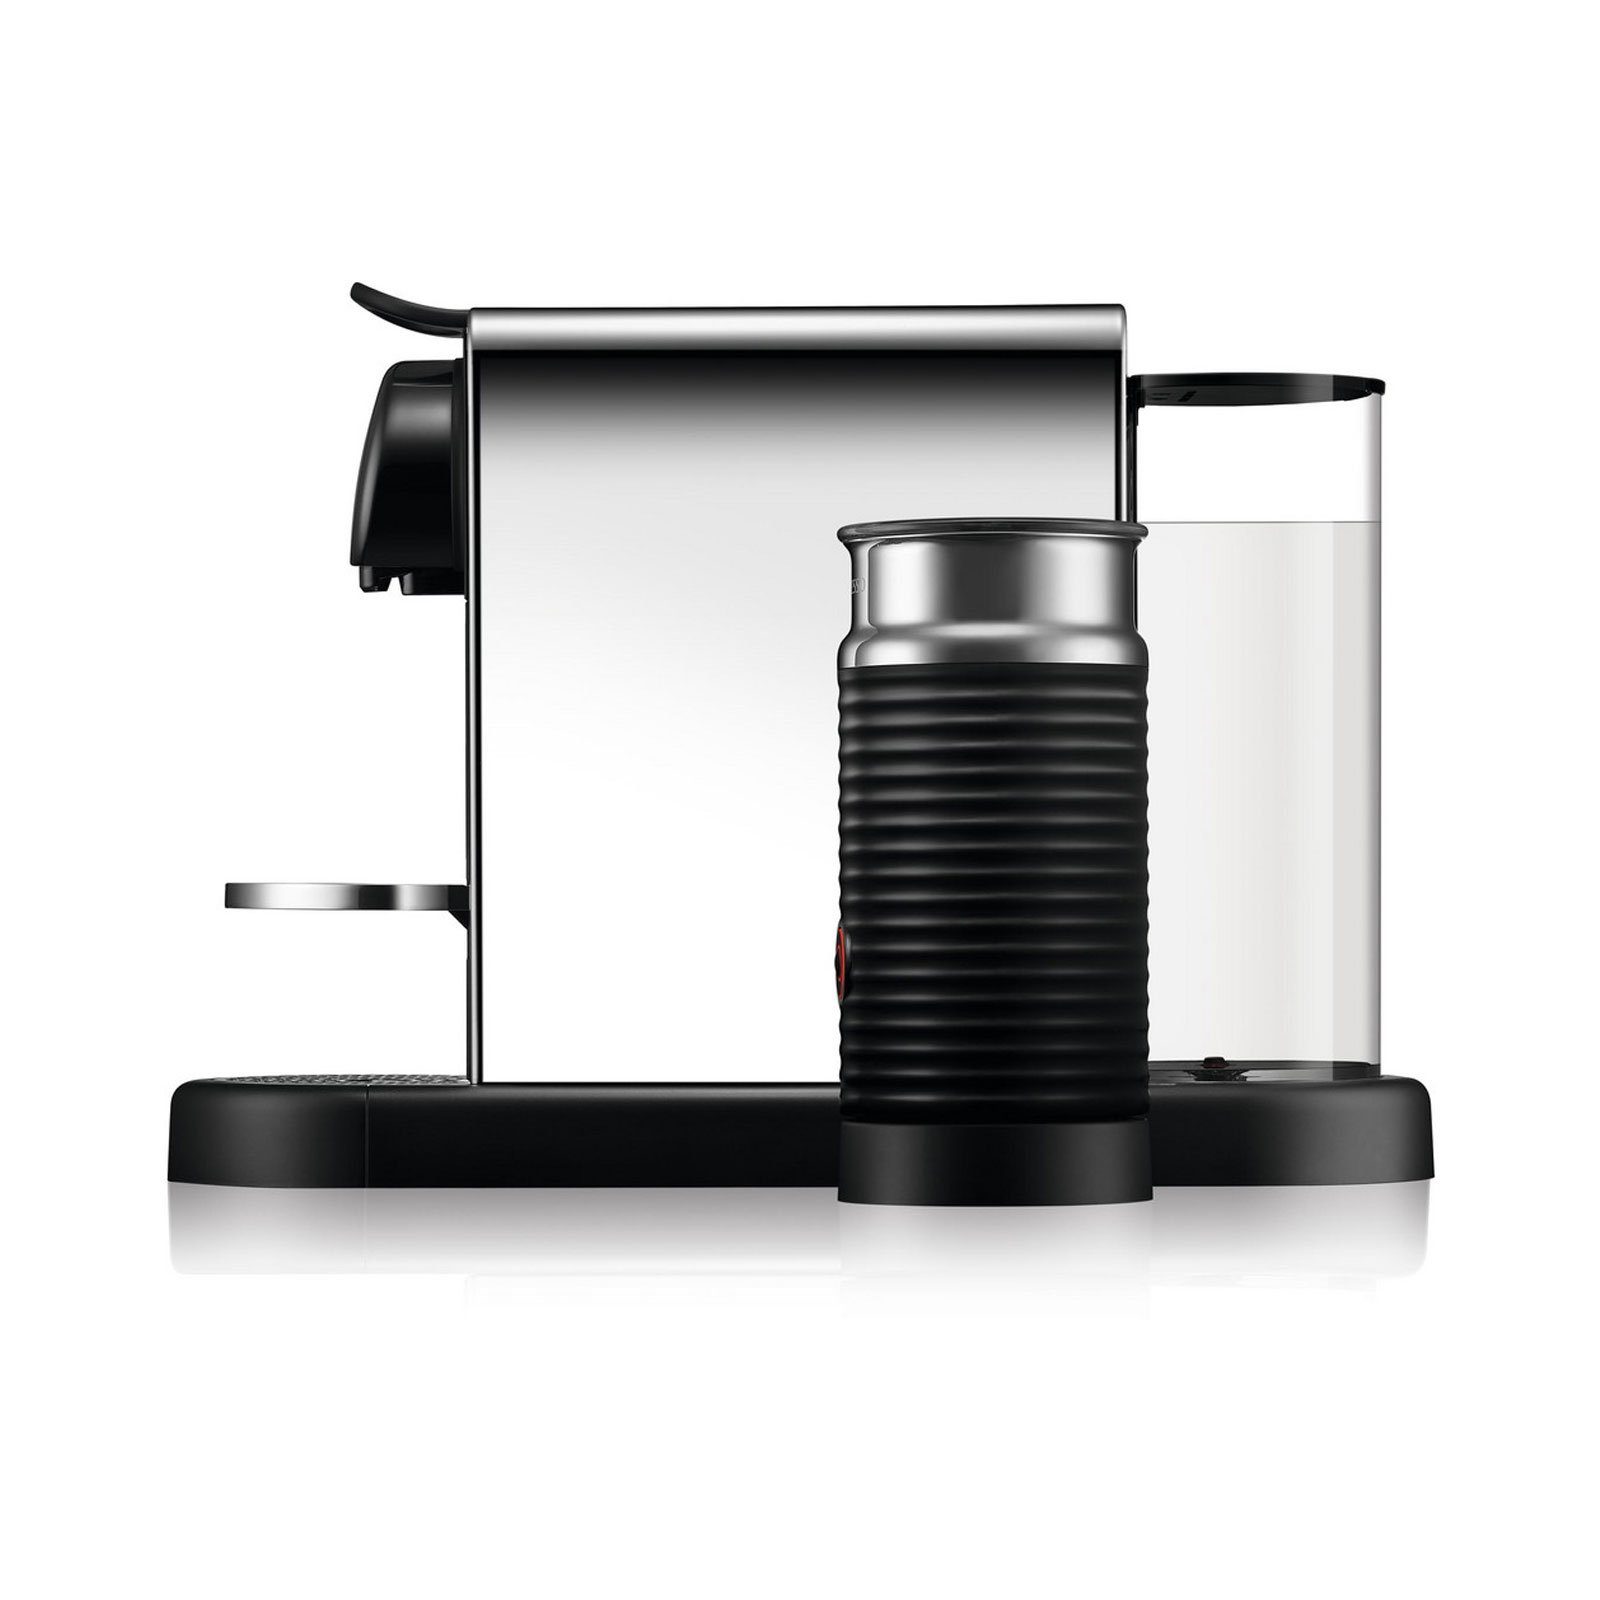 Krups Kapselmaschine Kaffeepads, Milch XN630, Behälter wunderbar für schaumige